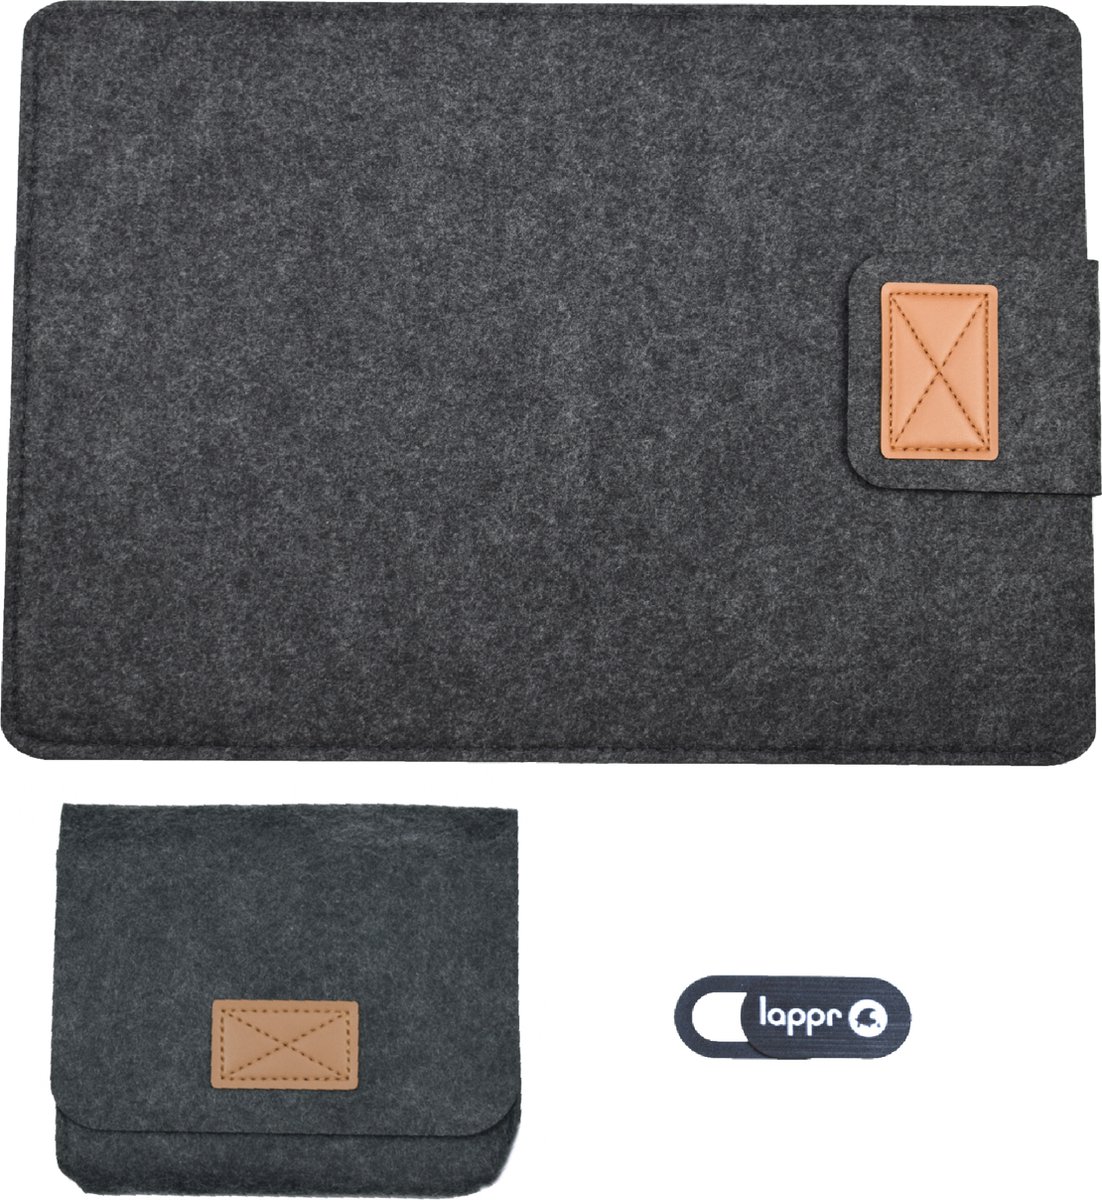 LAPPR - Scripta - Laptoptas - Laptophoes - Laptop Sleeve - Vilt - Laptophoes 12 inch - Zwart + Gratis Webcam Cover